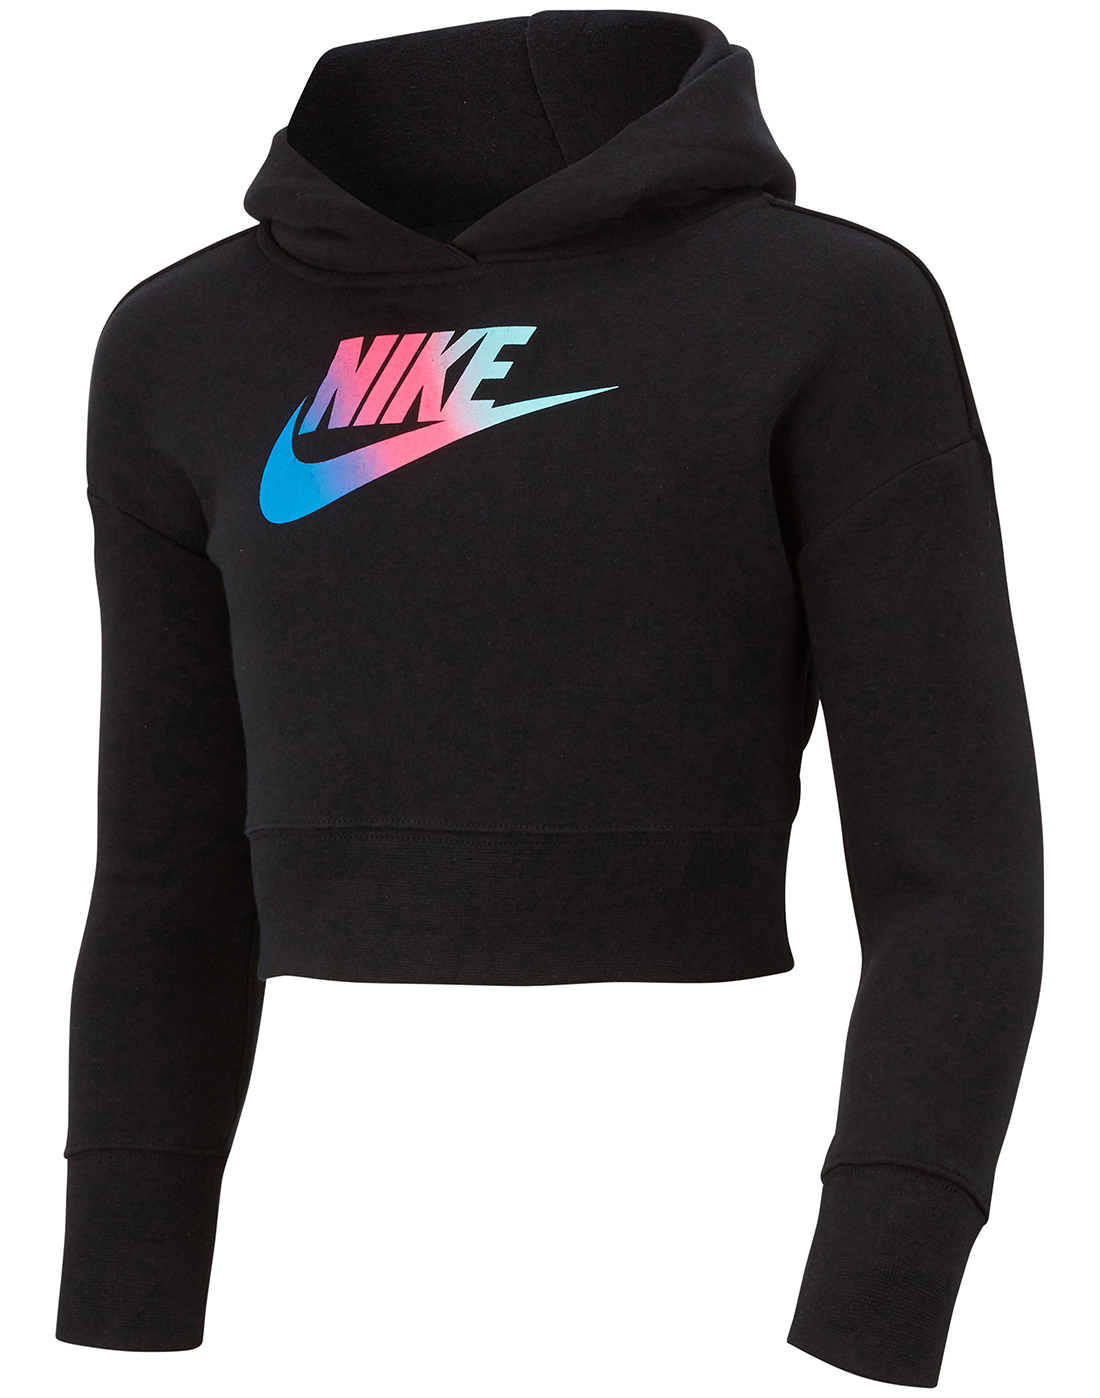 black cropped nike hoodie